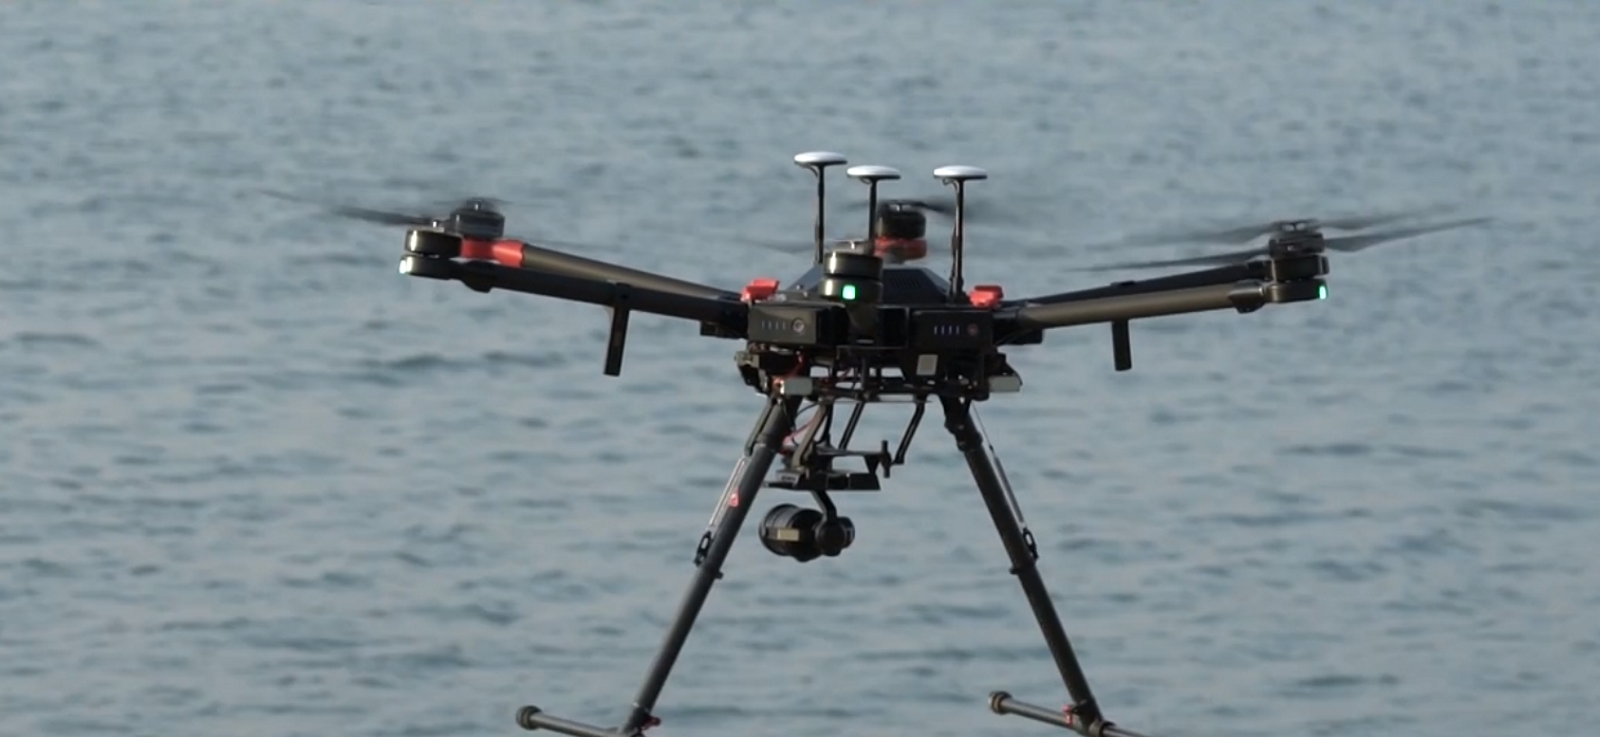 Pesant 10 kg, le drone Matrice 600 de DJI se destine aux professionnels. Il coûte près de 5.700 euros et est capable de transporter au maximum 6 kg de charge. Son autonomie est alors réduite à 16 minutes. © DJI